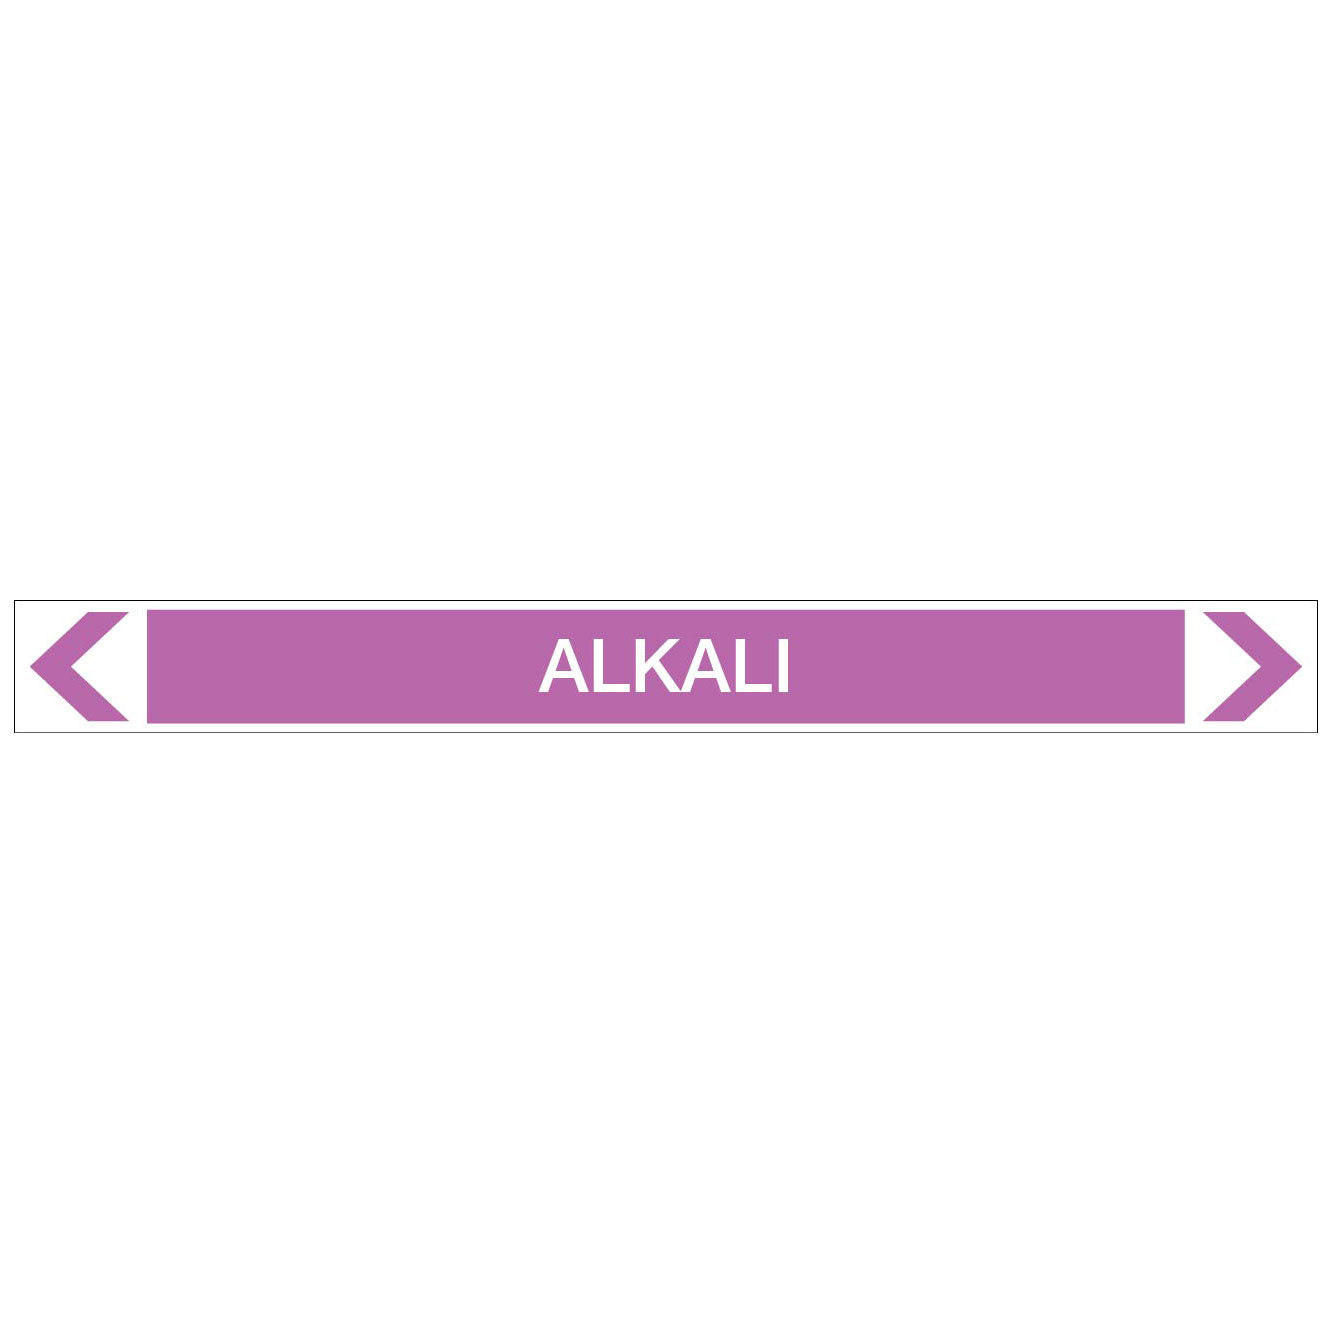 Alkalis / Acids - Alkali - Pipe Marker Sticker